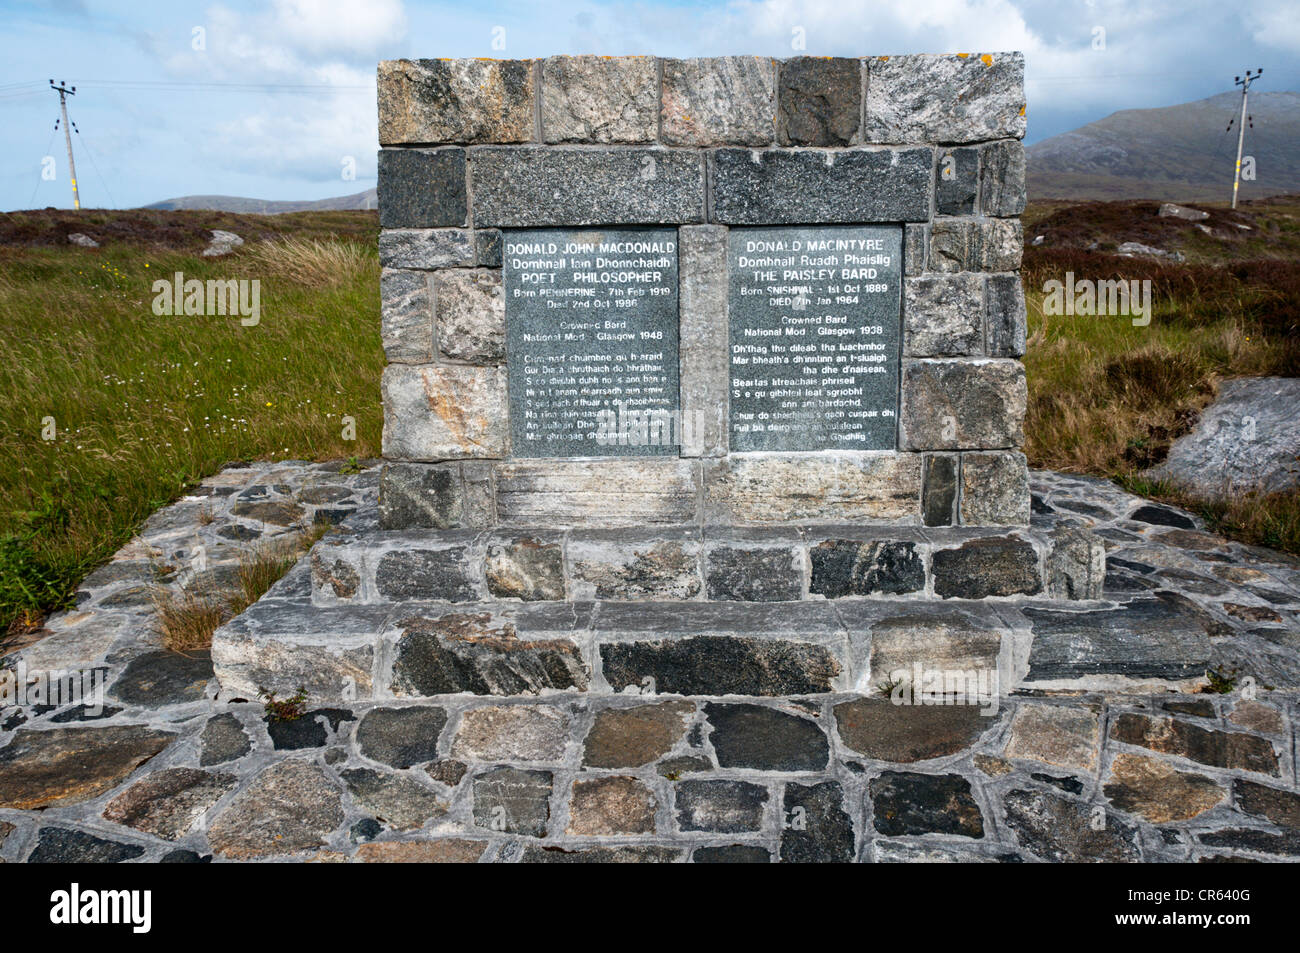 Monumento al tío y sobrino bardos Donald macintyre y Donald John MacDonald en South Uist, Escocia. Foto de stock